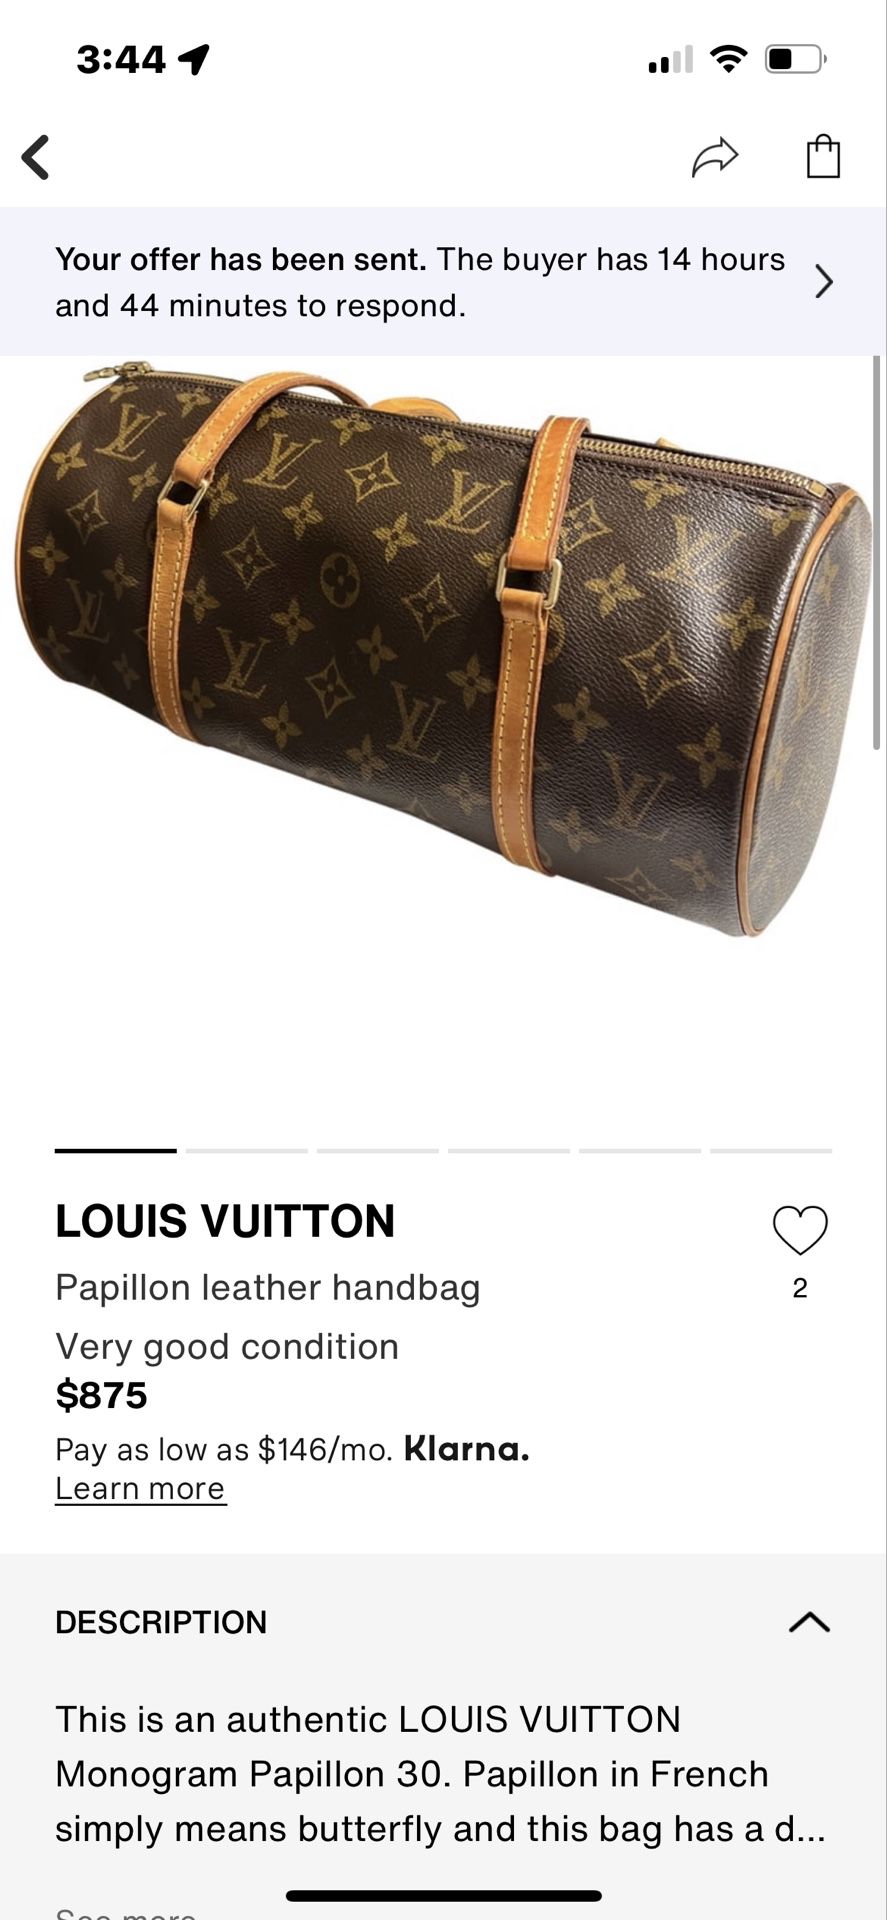 Verified Louis Vuitton Monogram Papillon 30 Bag 